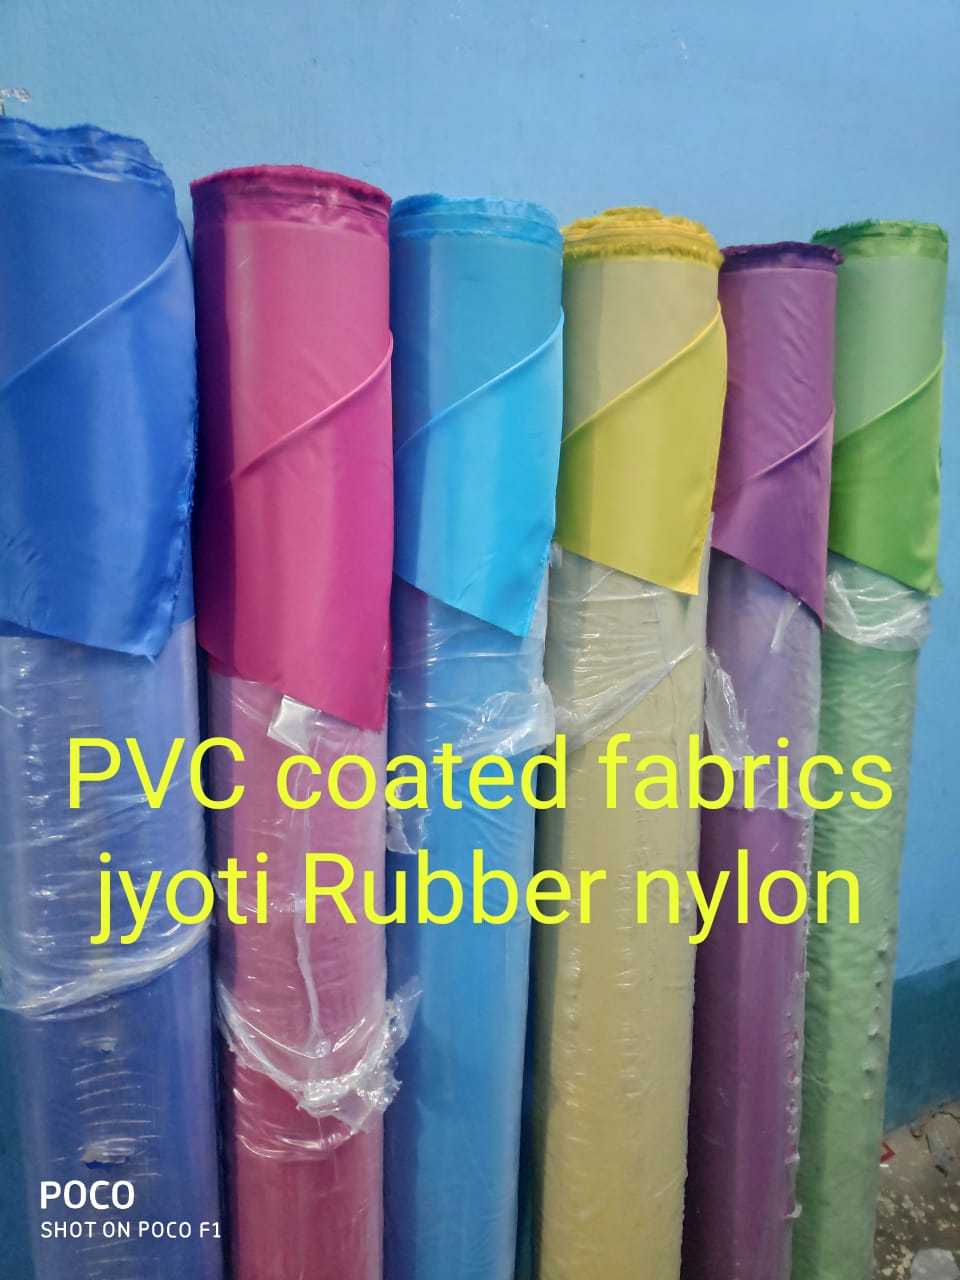 Best Quality PVC Coated Fabrics in Kolkata